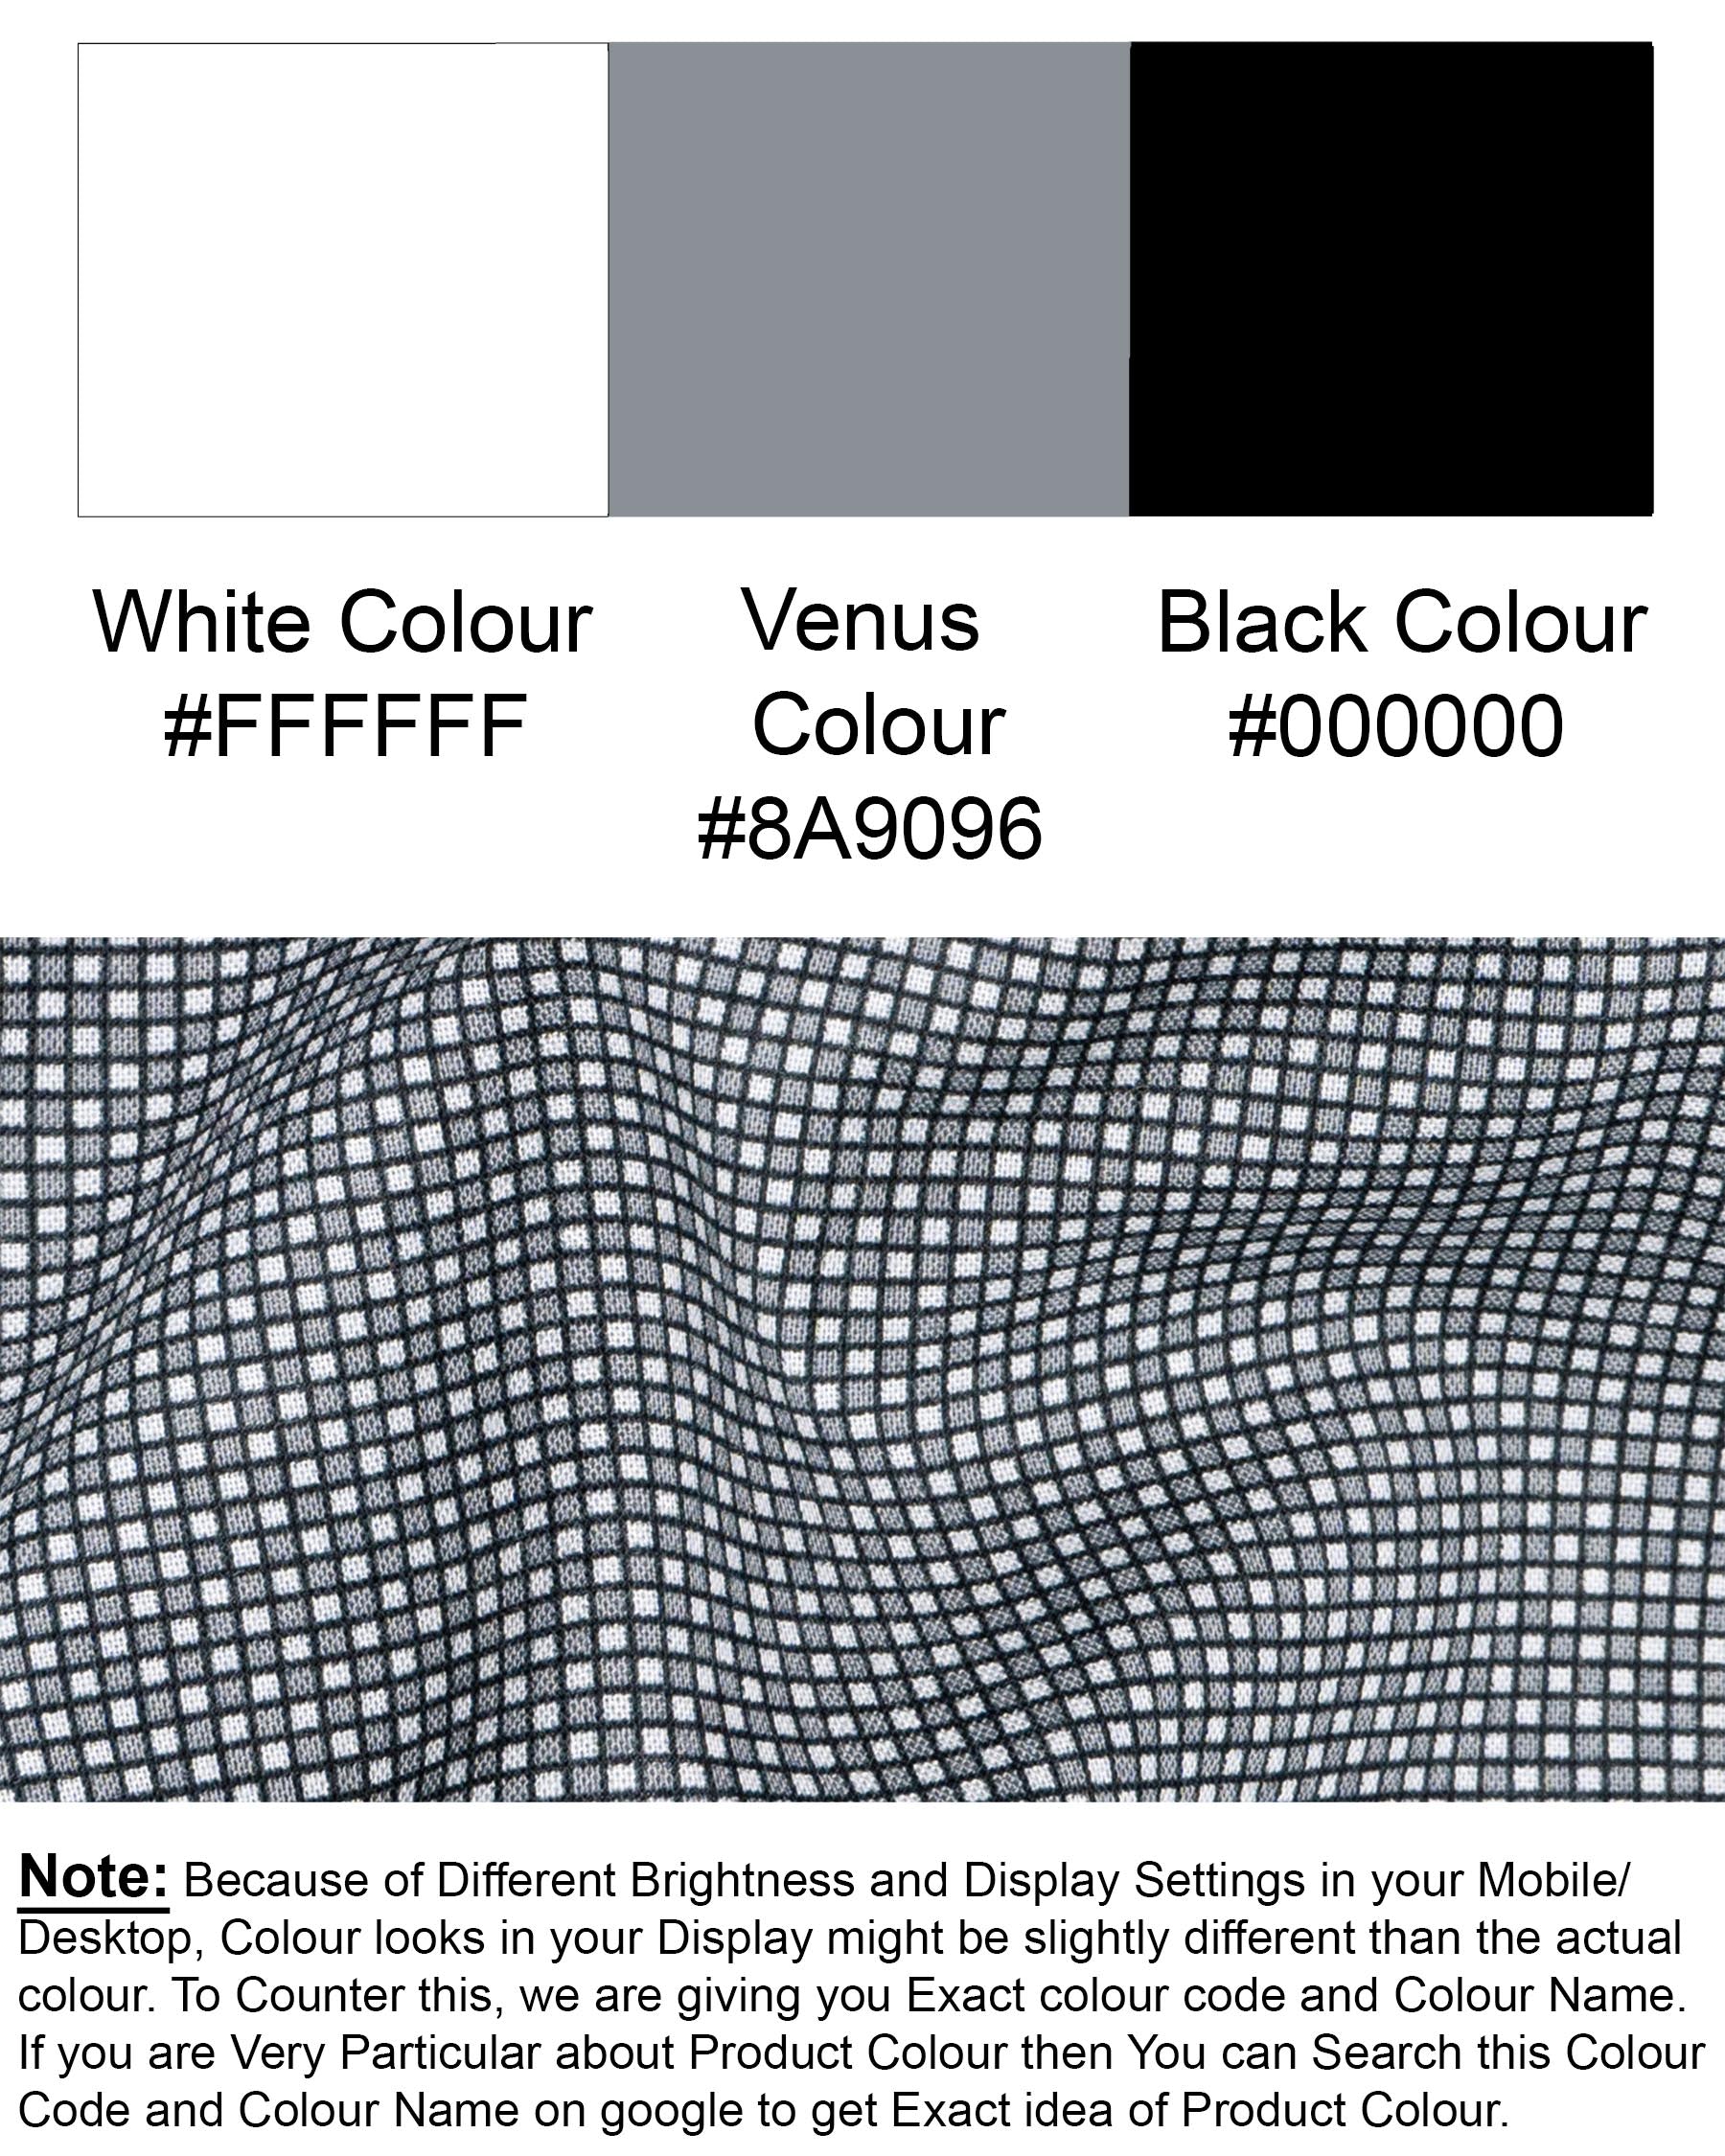 Bright White and Venus Grey Checkered Premium Cotton Shirt 6974-BLK-38,6974-BLK-38,6974-BLK-39,6974-BLK-39,6974-BLK-40,6974-BLK-40,6974-BLK-42,6974-BLK-42,6974-BLK-44,6974-BLK-44,6974-BLK-46,6974-BLK-46,6974-BLK-48,6974-BLK-48,6974-BLK-50,6974-BLK-50,6974-BLK-52,6974-BLK-52